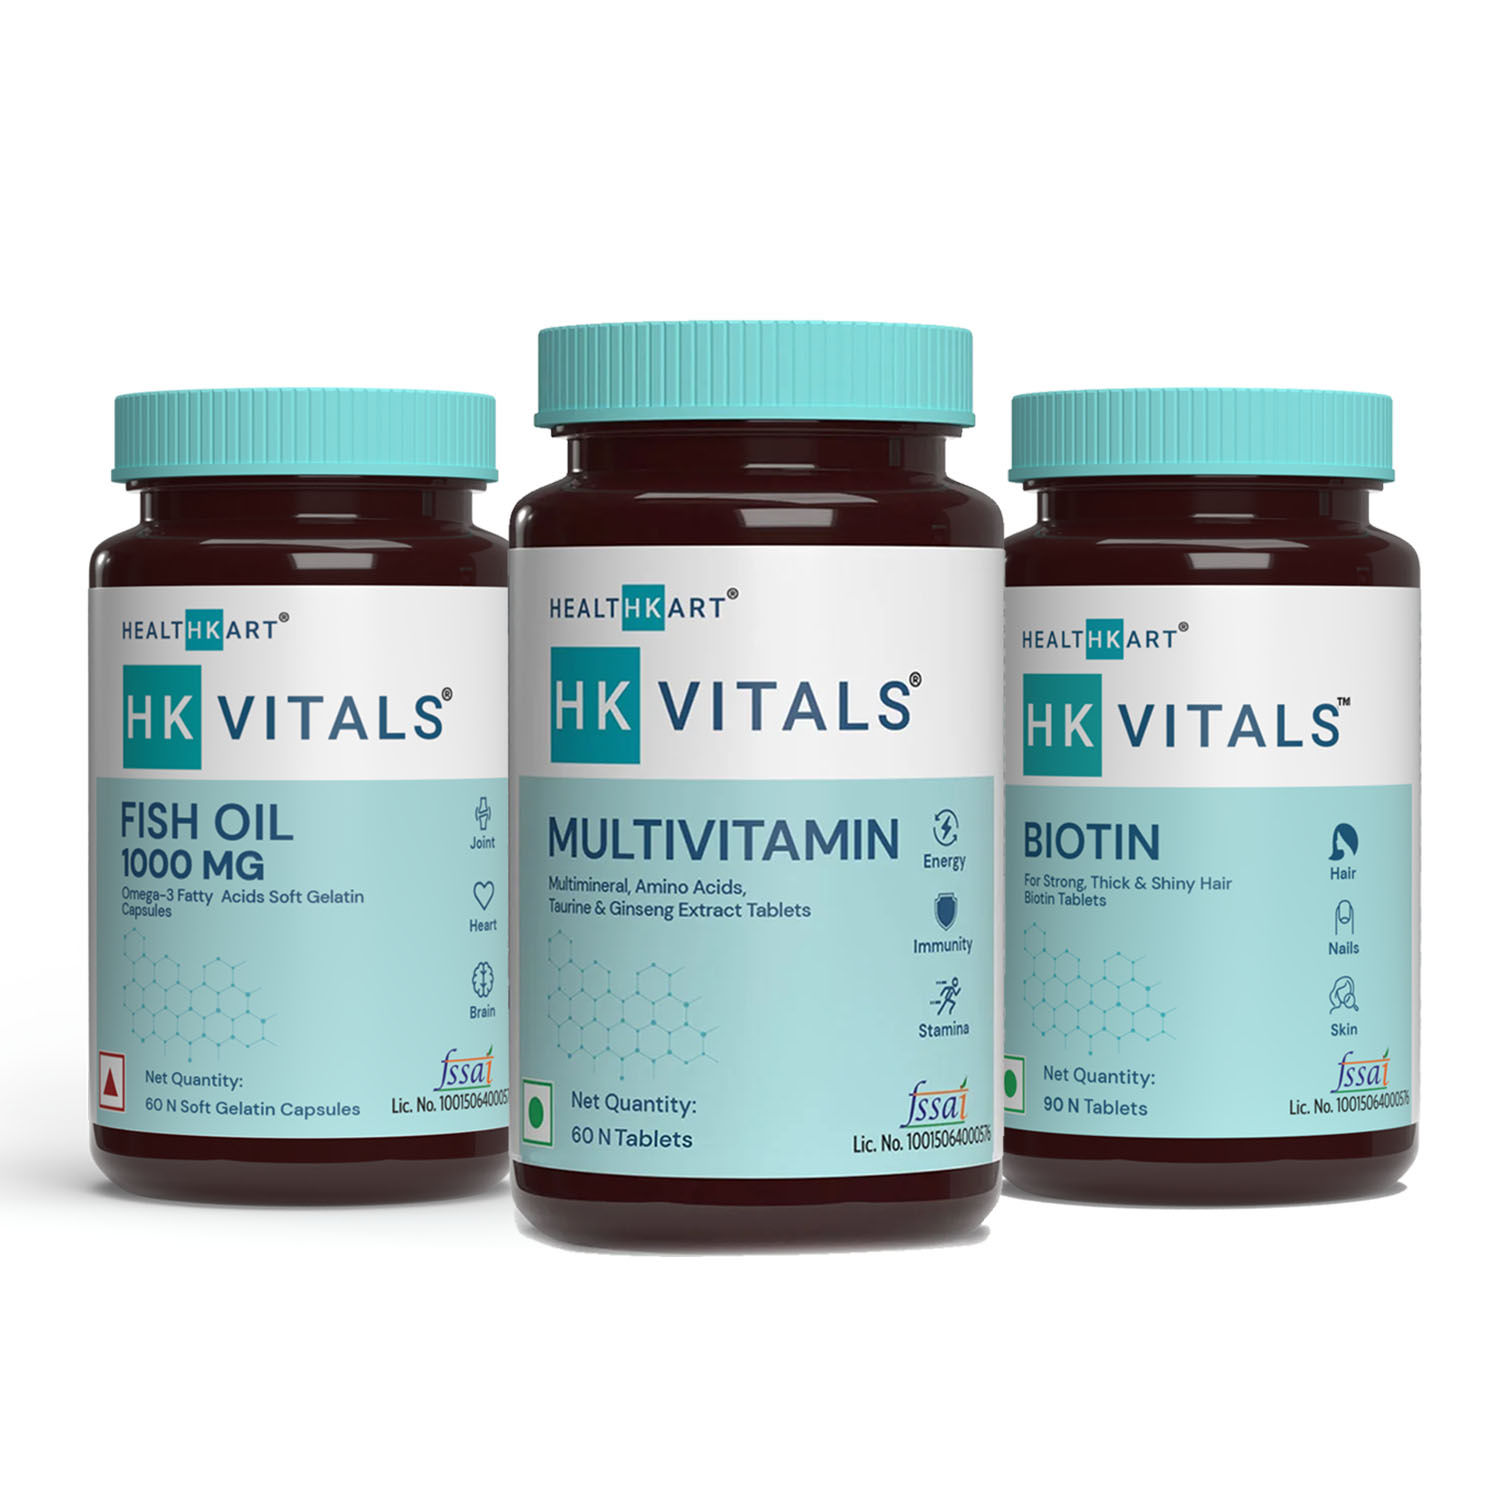 HealthKart HK Vitals Multivitamin - 60 N + Fish Oil 1000mg - 60 Capsules + Biotin 10000mcg - 90 N